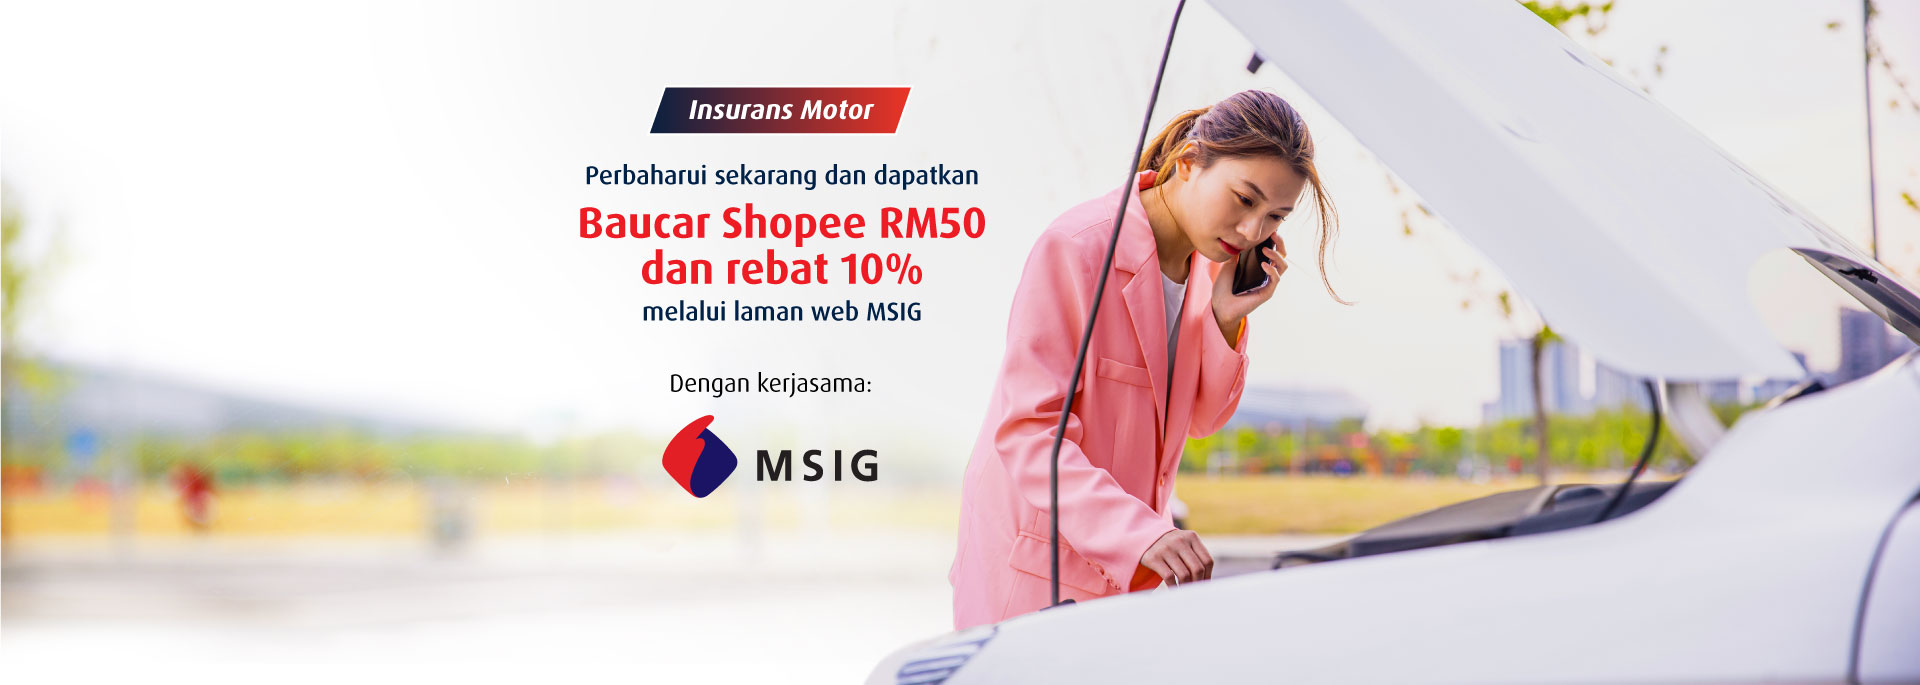 Perbaharui sekarang dan dapatkan Baucar Shopee RM50 dan rebat 10% melalui laman web MSIG